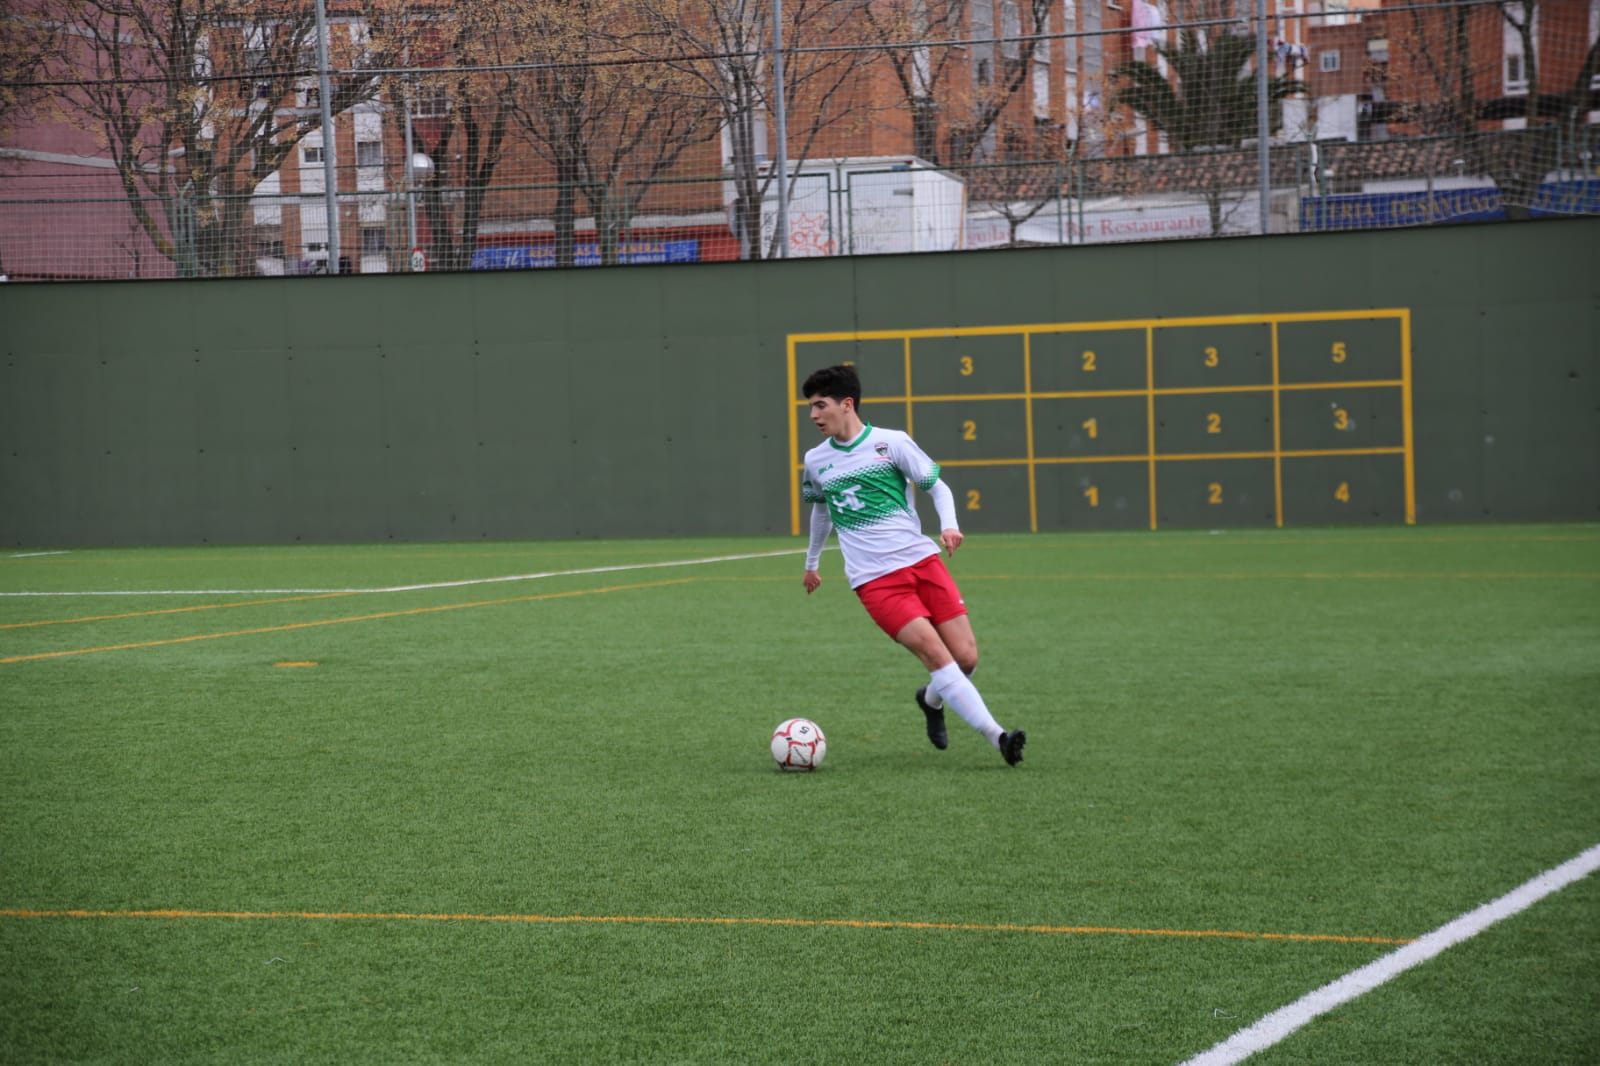 Villa, jugador del Juvenil ‘B’: «La confianza en los compañeros siempre es un punto positivo a la hora de competir»